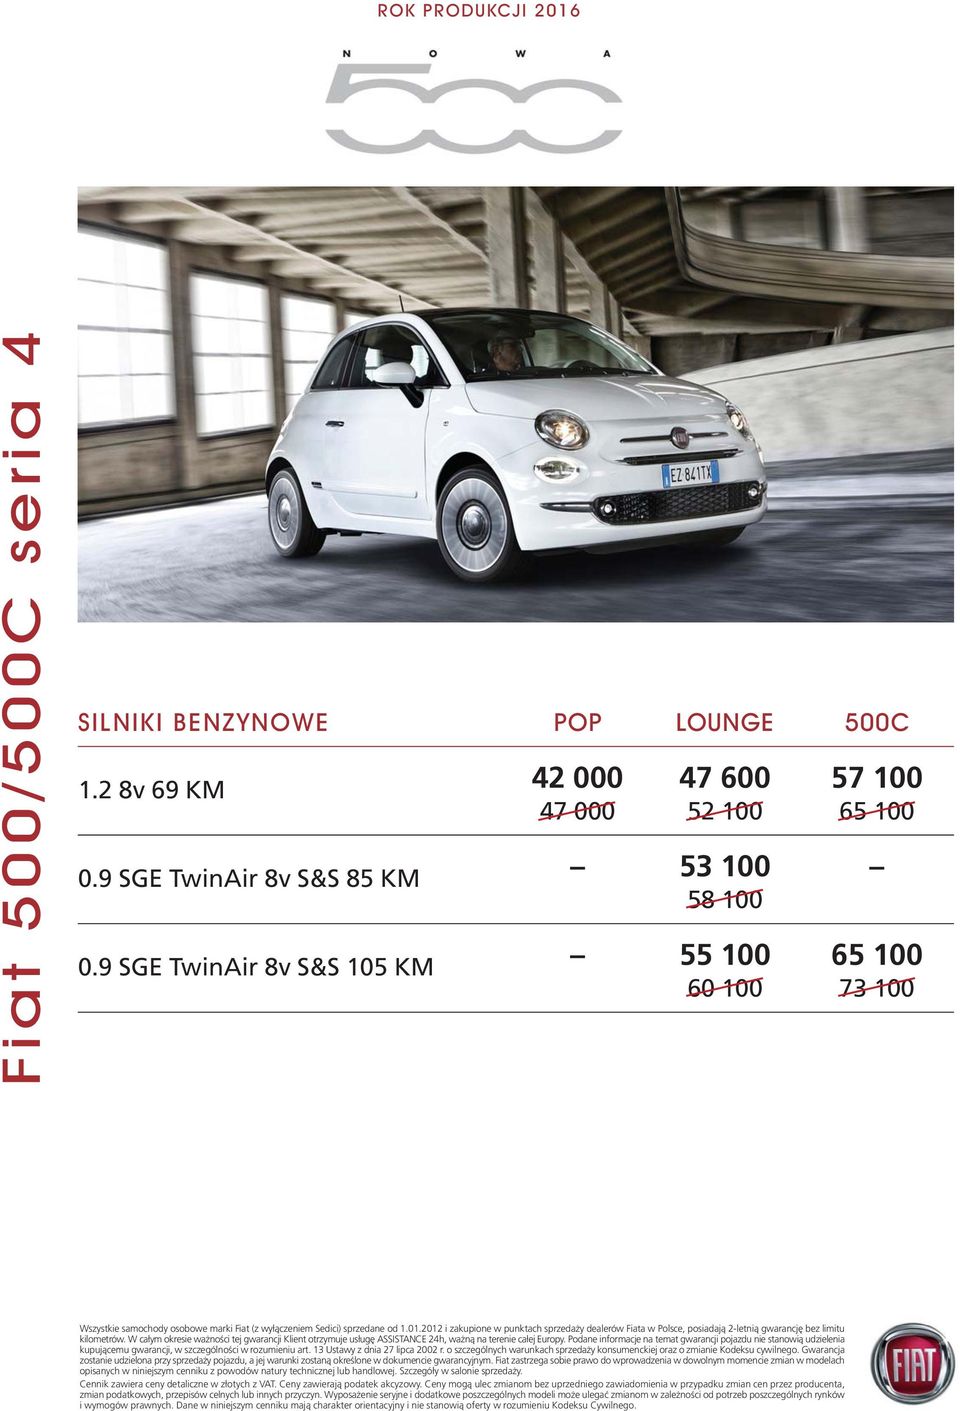 2012 i zakupione w punktach sprzedaży dealerów Fiata w Polsce, posiadają 2-letnią gwarancję bez limitu kilometrów.